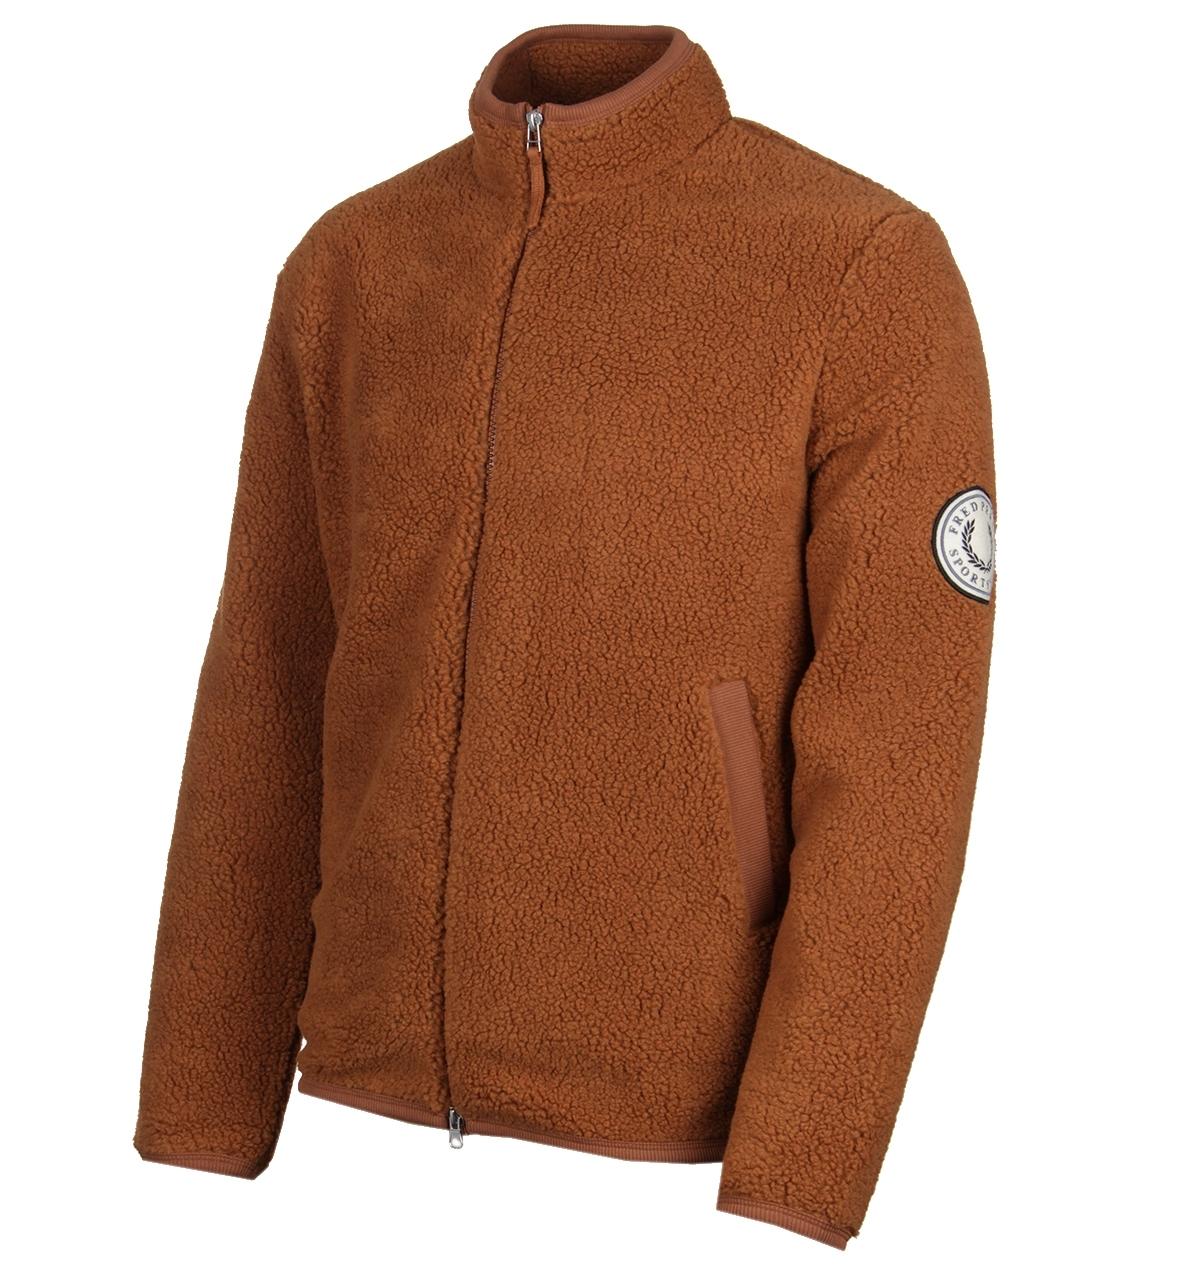 Fred Perry Borg Cognac Zip Fleece Jacket in Brown for Men - Lyst